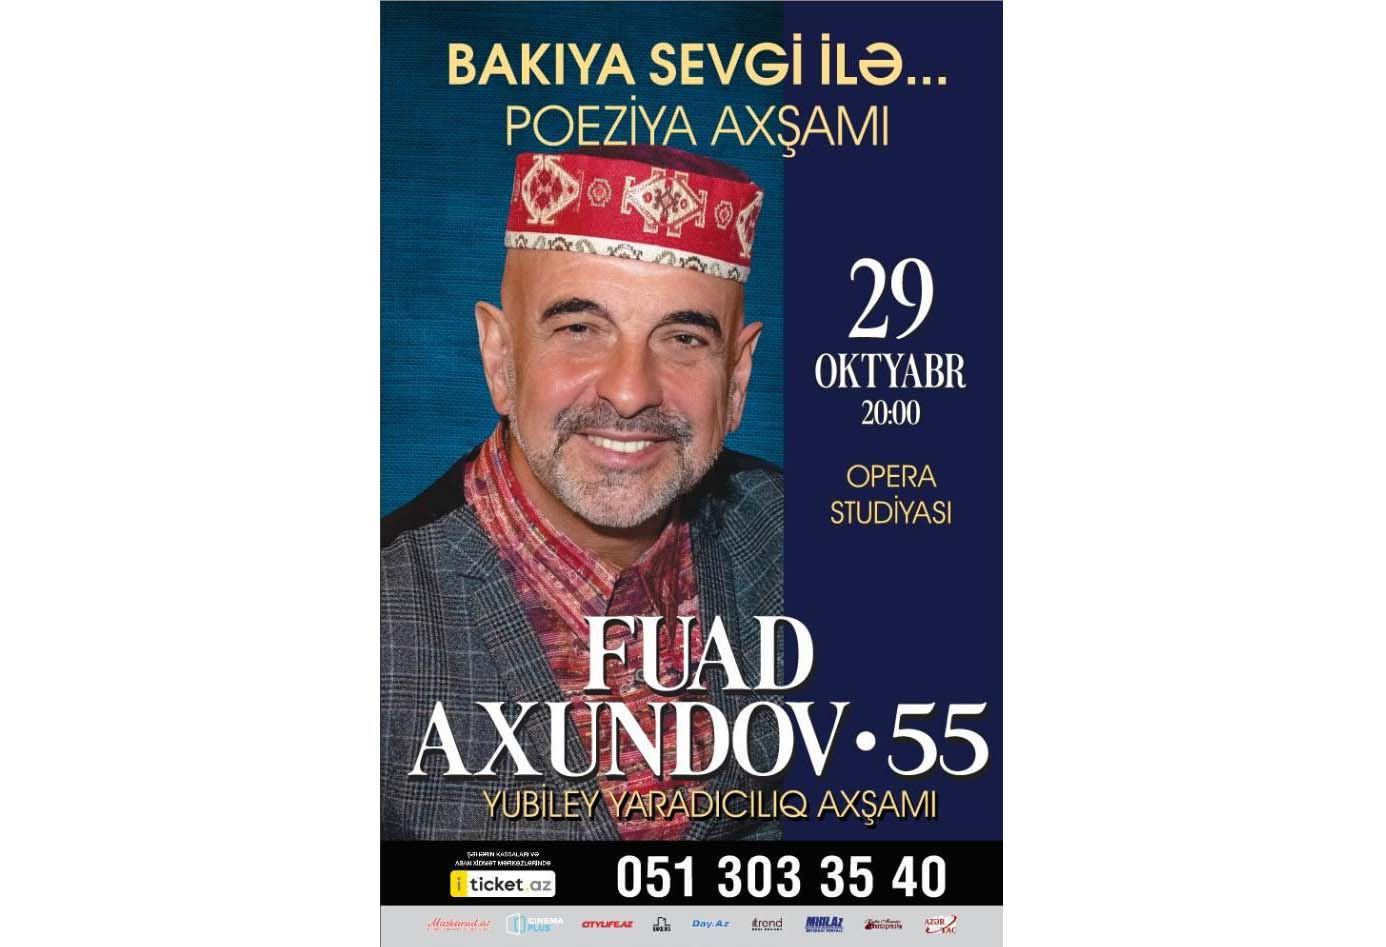 С любовью к Баку - Фуад Ахундов отметит 55-летие вечером поэзии